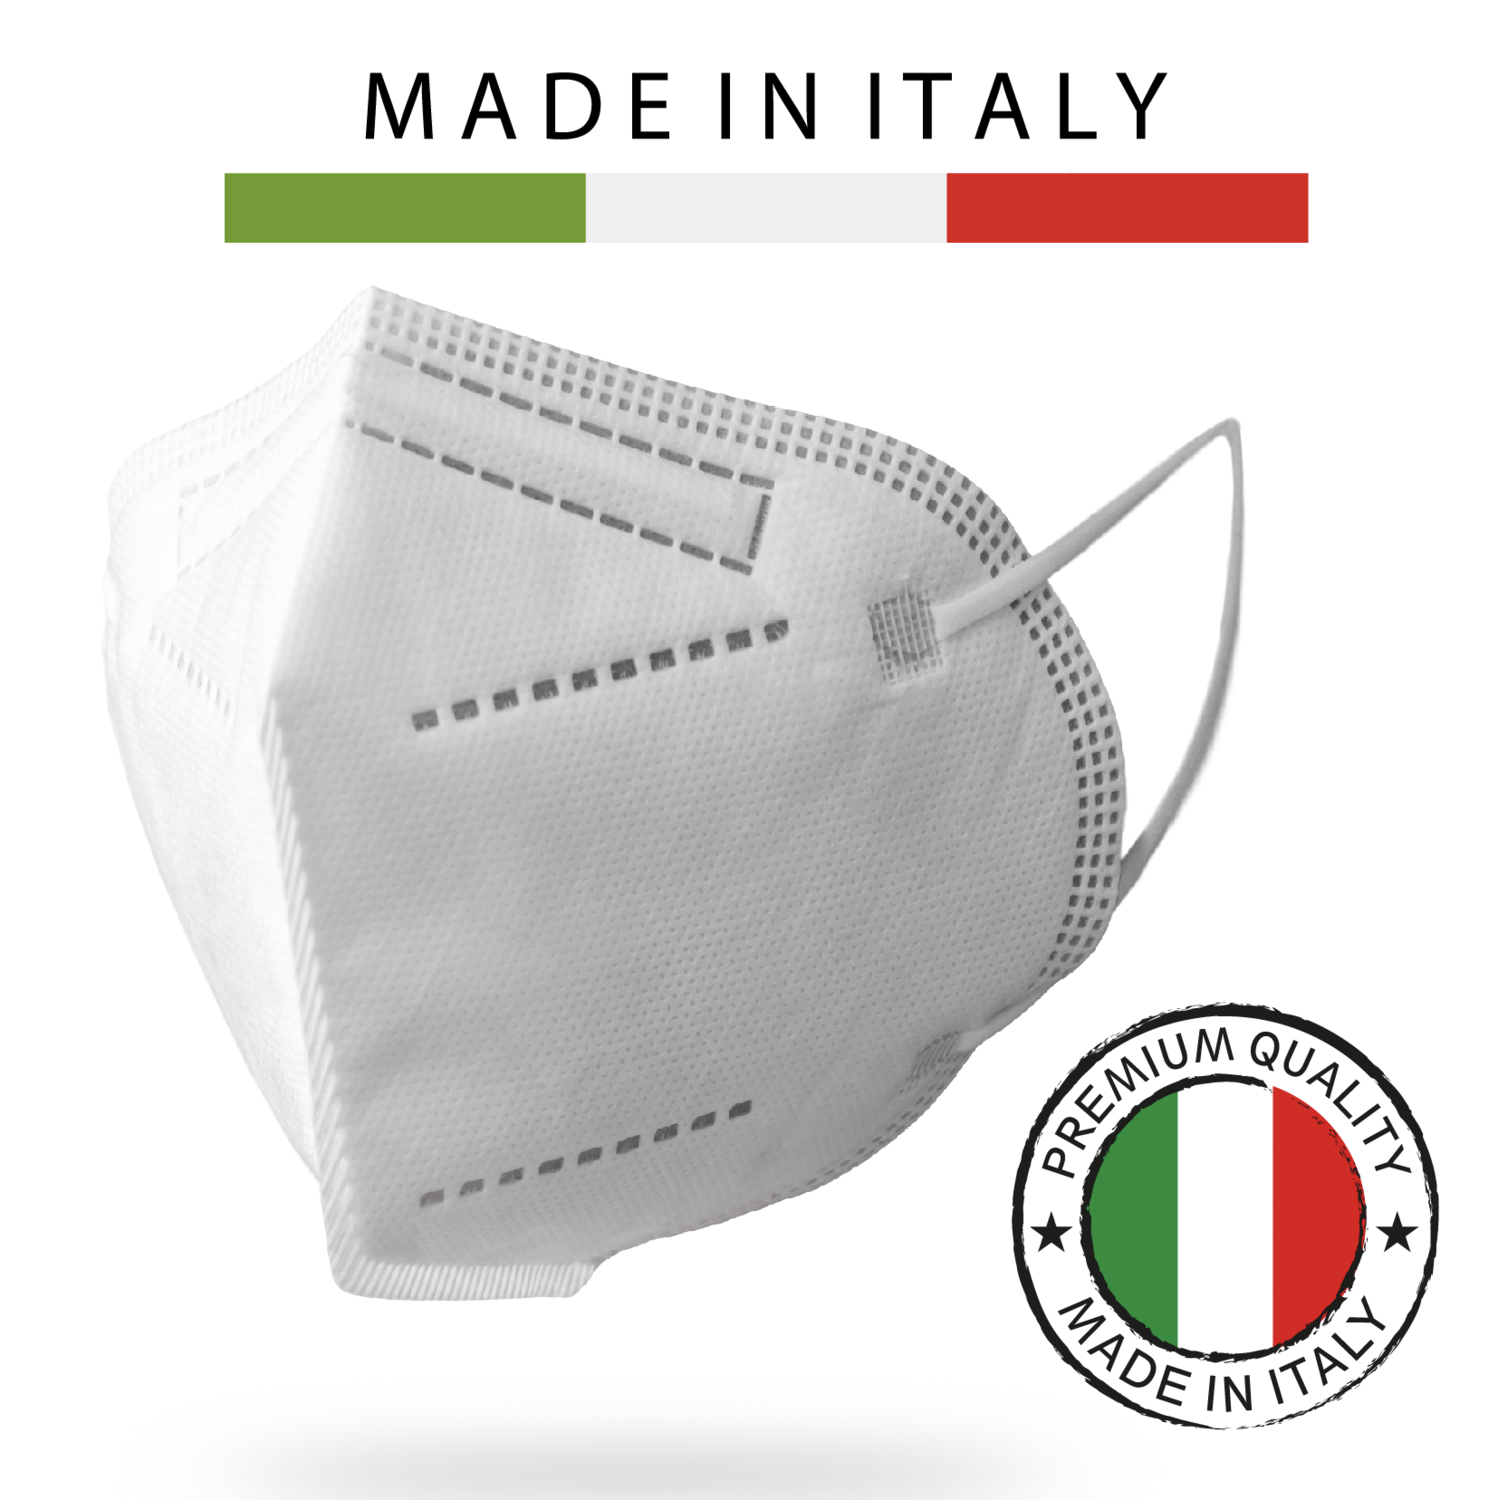 200 pz FFP2 Protettiva, 100% Made In Italy, Super Filtrante